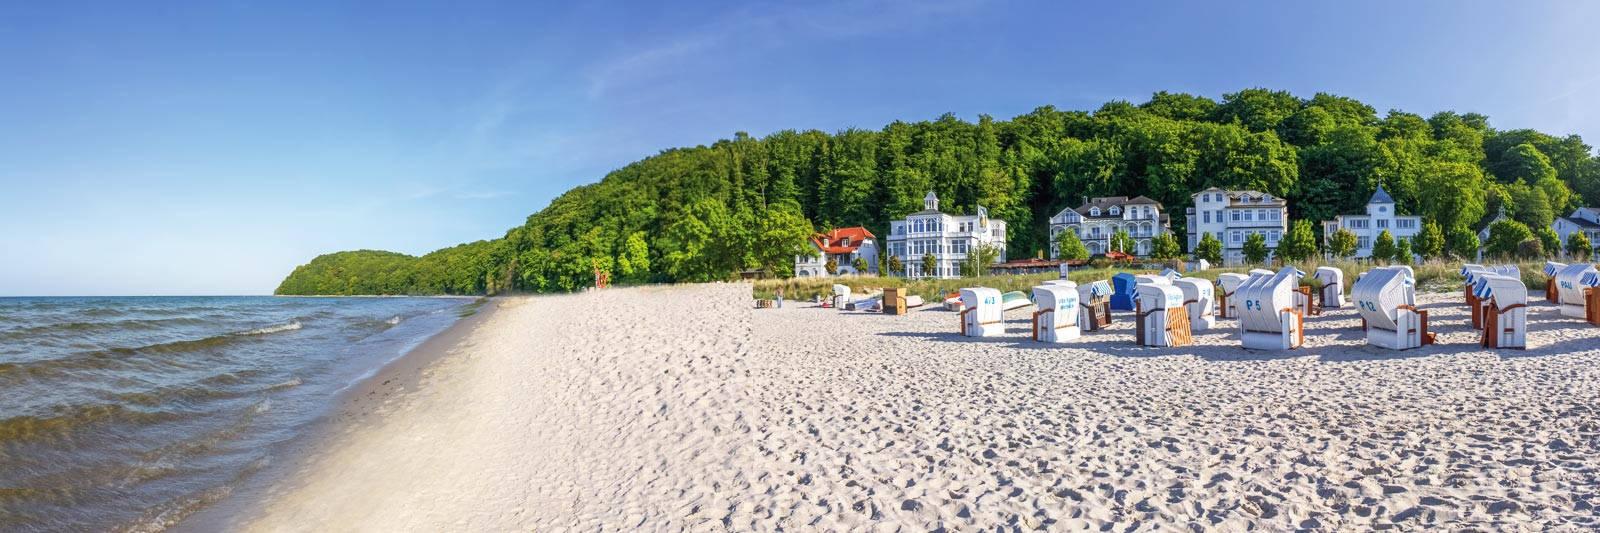 151 Ferienwohnungen und Ferienhäuser in Lübstorf - tourist-online.de